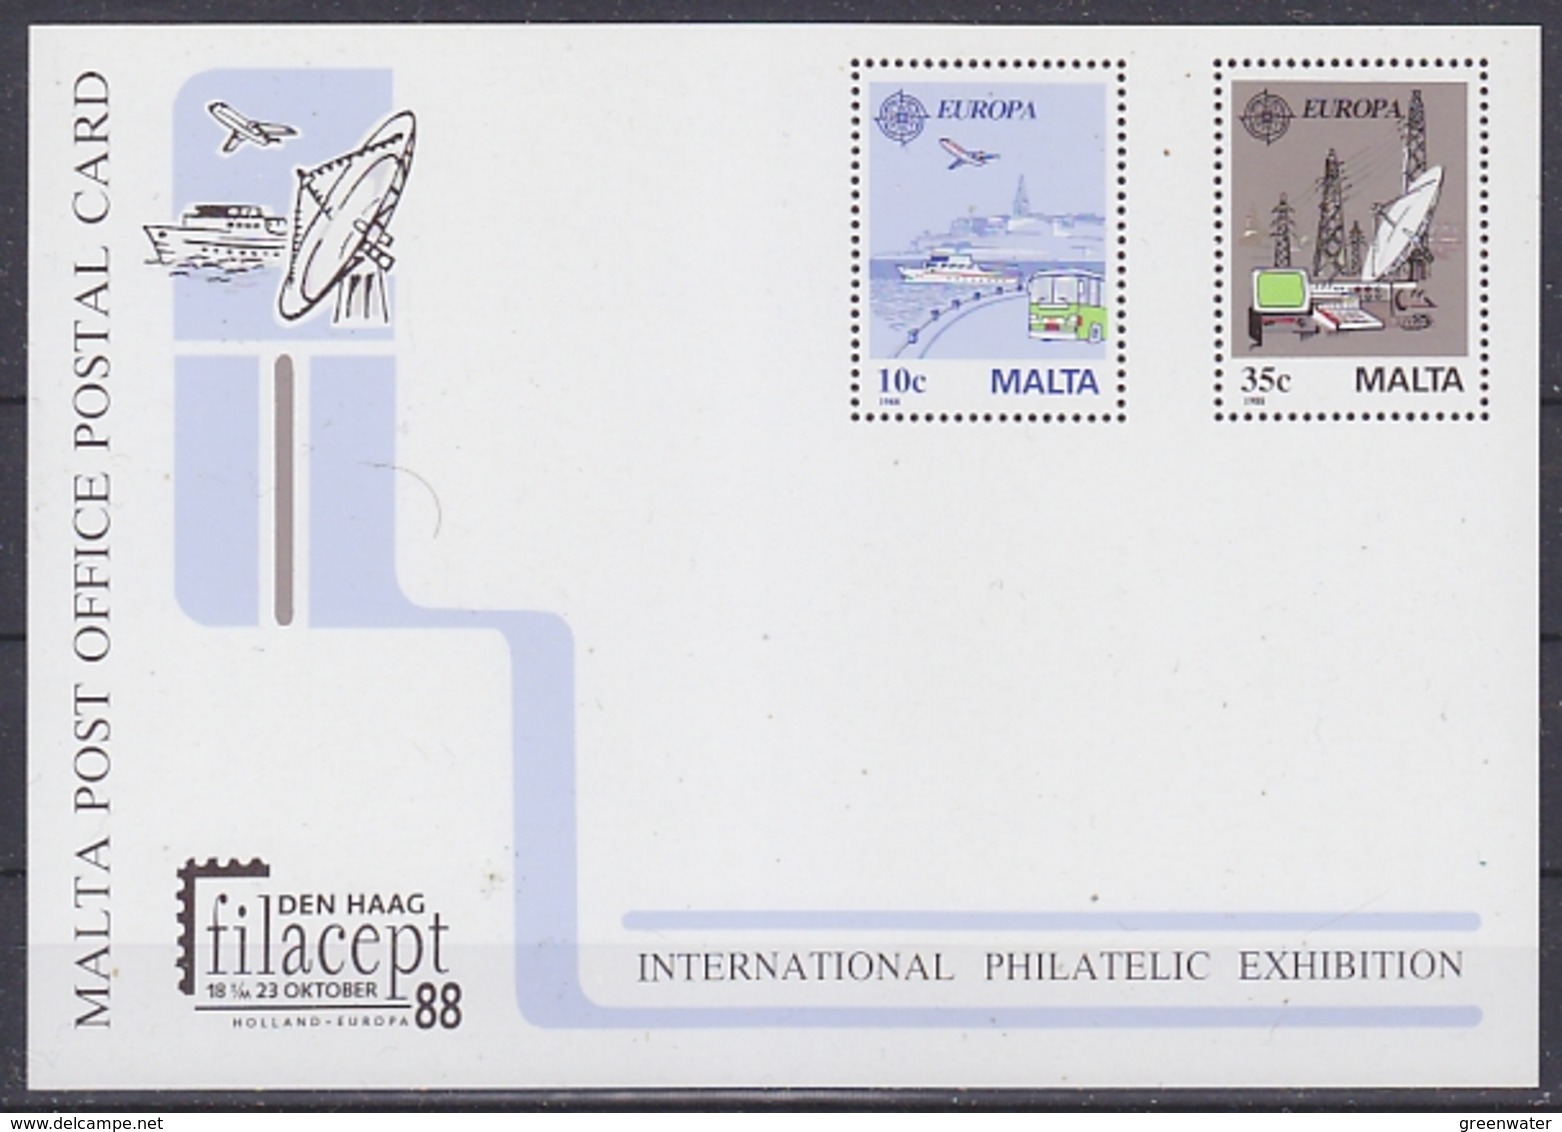 Europa Cept 1988 Malta Filacept Postal Stationery Unused (44825 ) - 1988